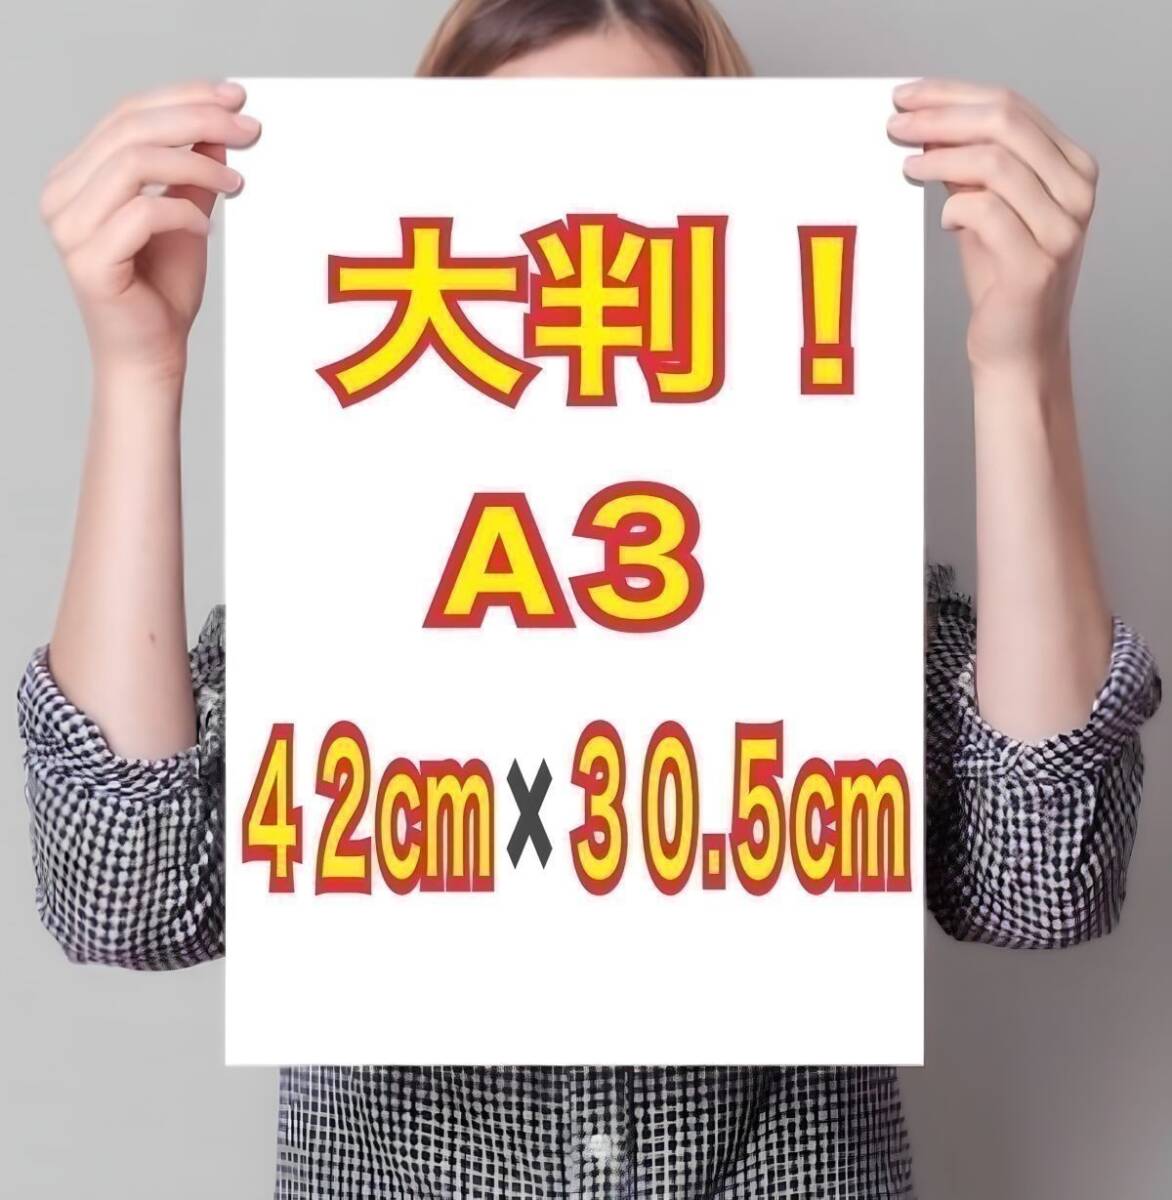  иностранная модель A3 постер супер глянец большой размер 42cm×30.5cm! life photograph *949* Junior идол в натуральную величину способ L